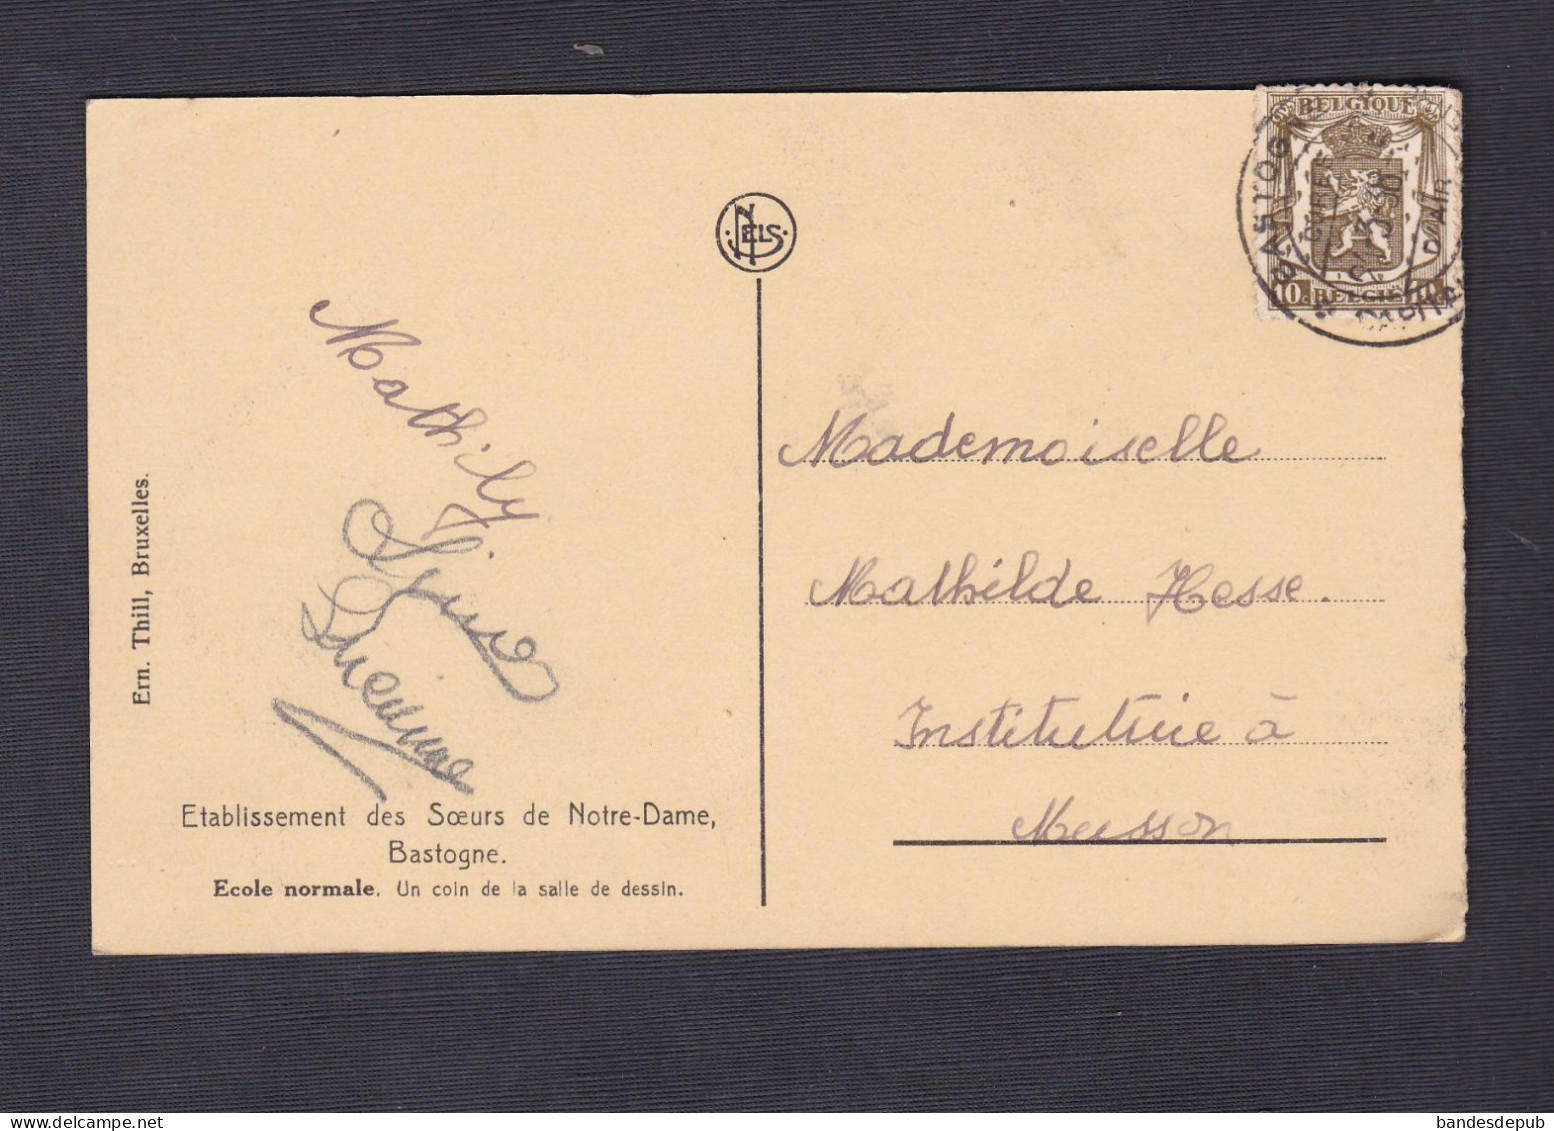 Bastogne Etablissement Des Soeurs De Notre Dame Ecole Normale Un Coin De La Salle De Dessin  (56484) - Bastogne